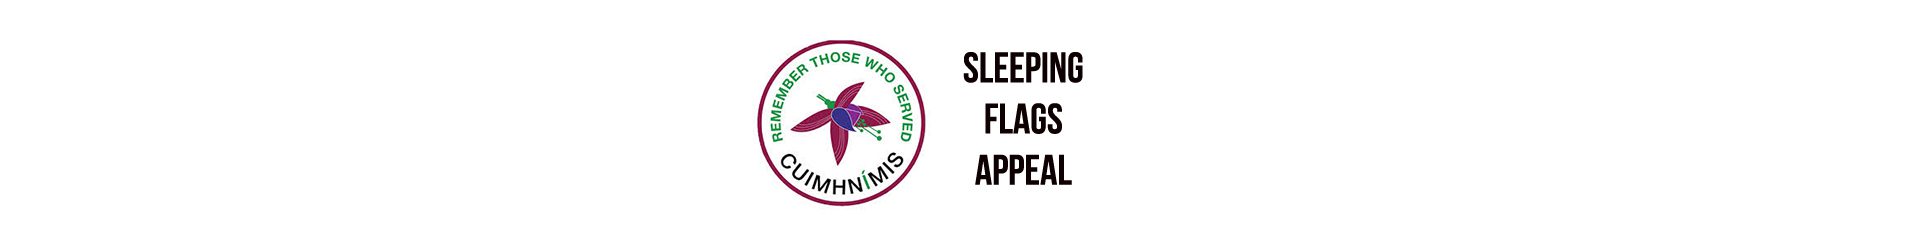 Sleeping Flags Appeal